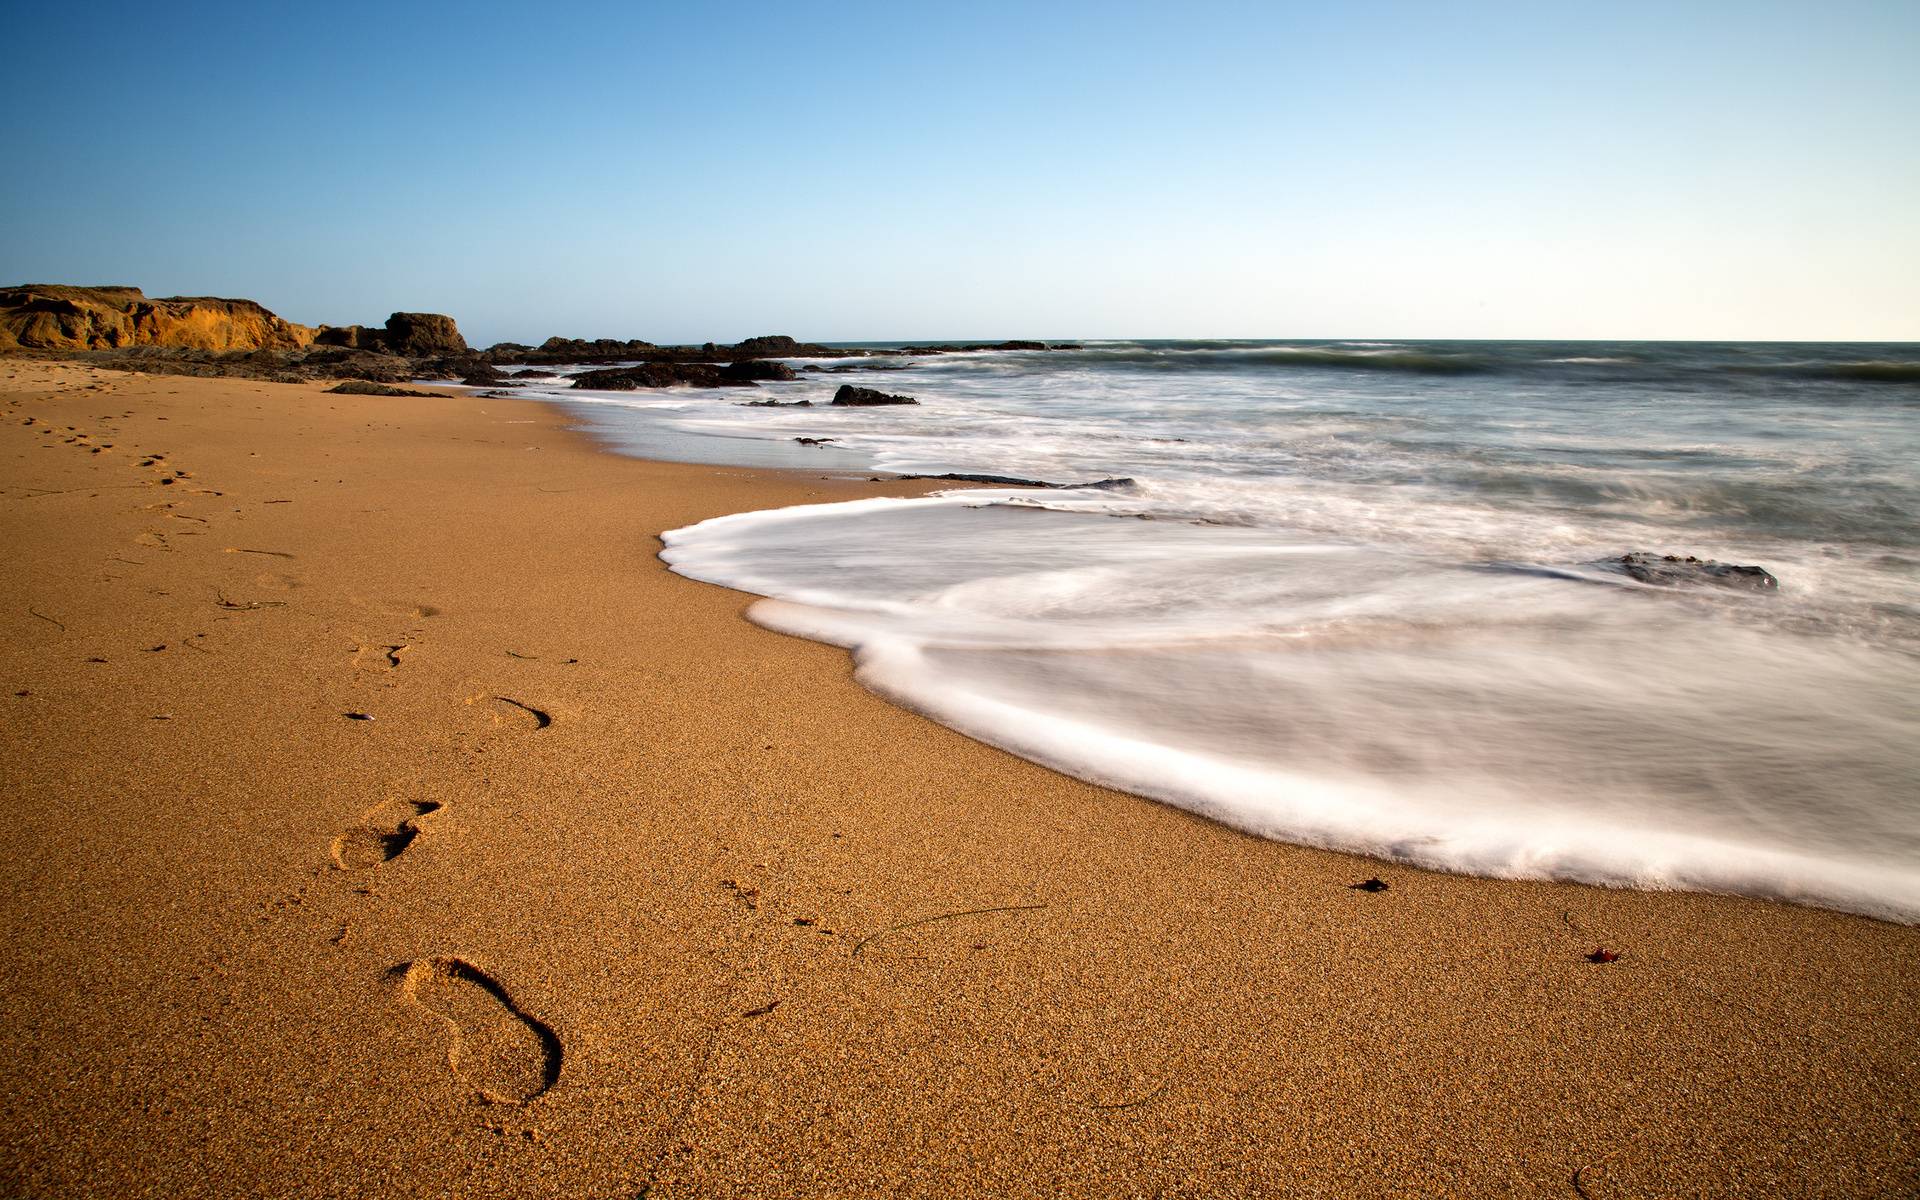 Фото море пейзаж песок - бесплатные картинки на Fonwall.